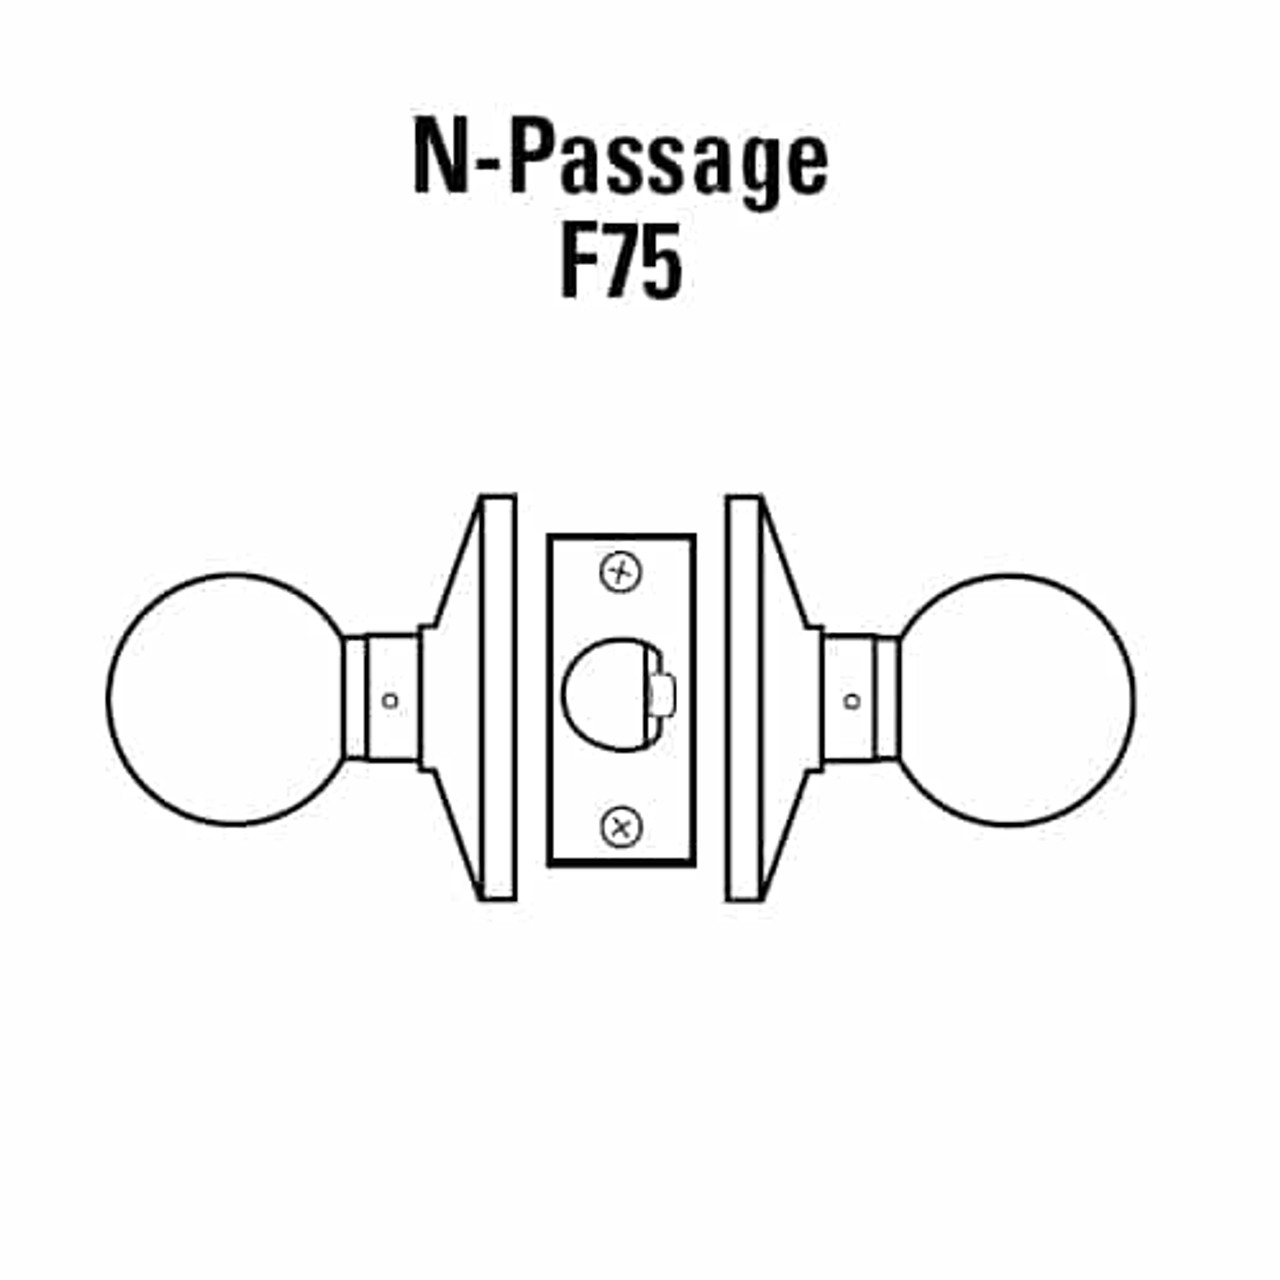 6K20N4DS3605 Best 6K Series Passage Medium Duty Cylindrical Knob Locks with Round Style in Bright Brass